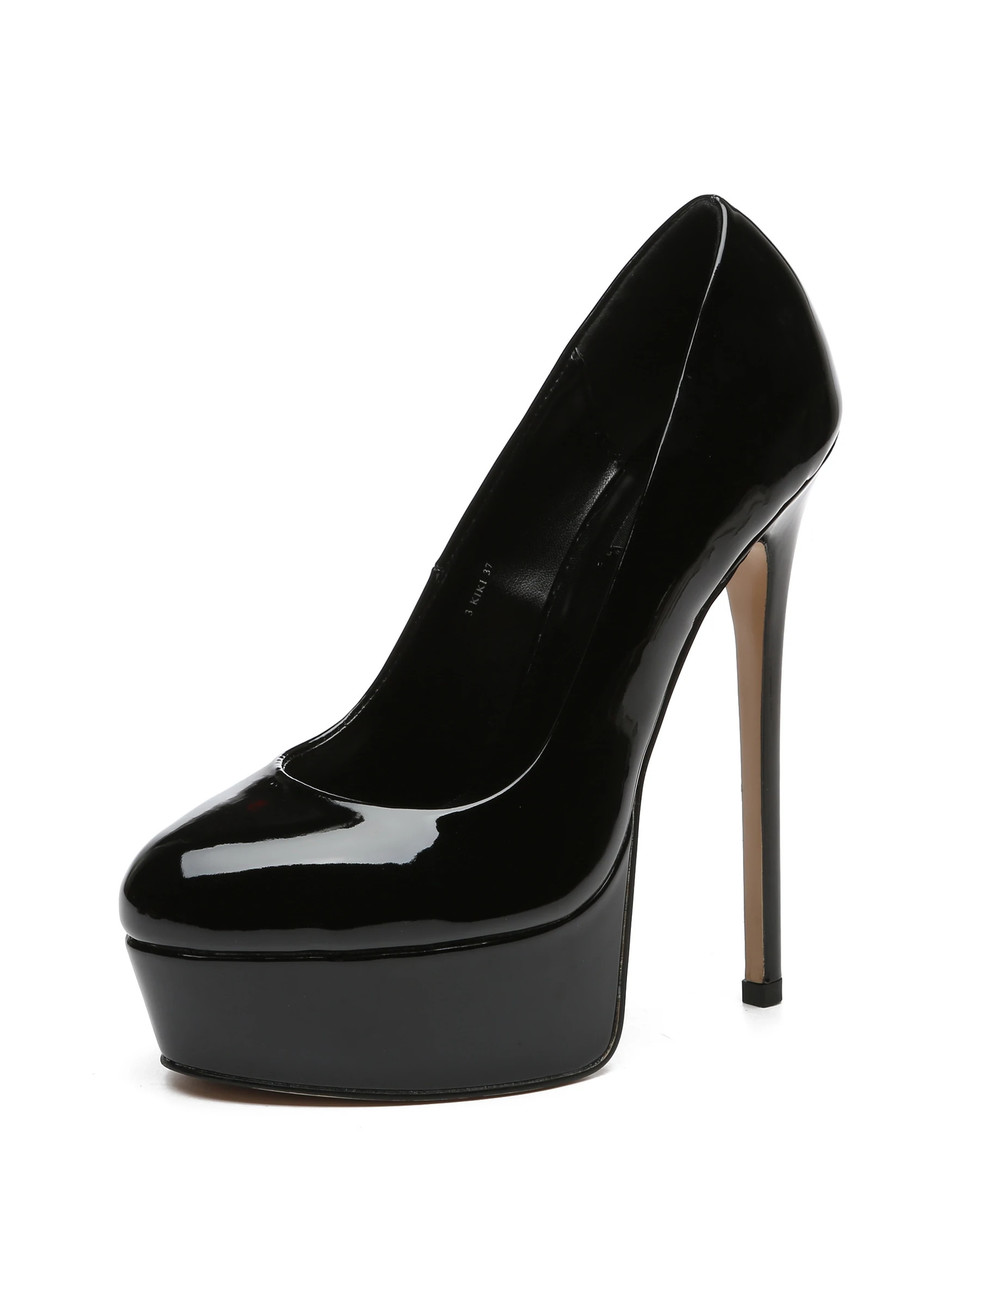 Giaro KIKI BLACK SHINY PLATFORM PUMPS - Shoebidoo Shoes | Giaro high heels